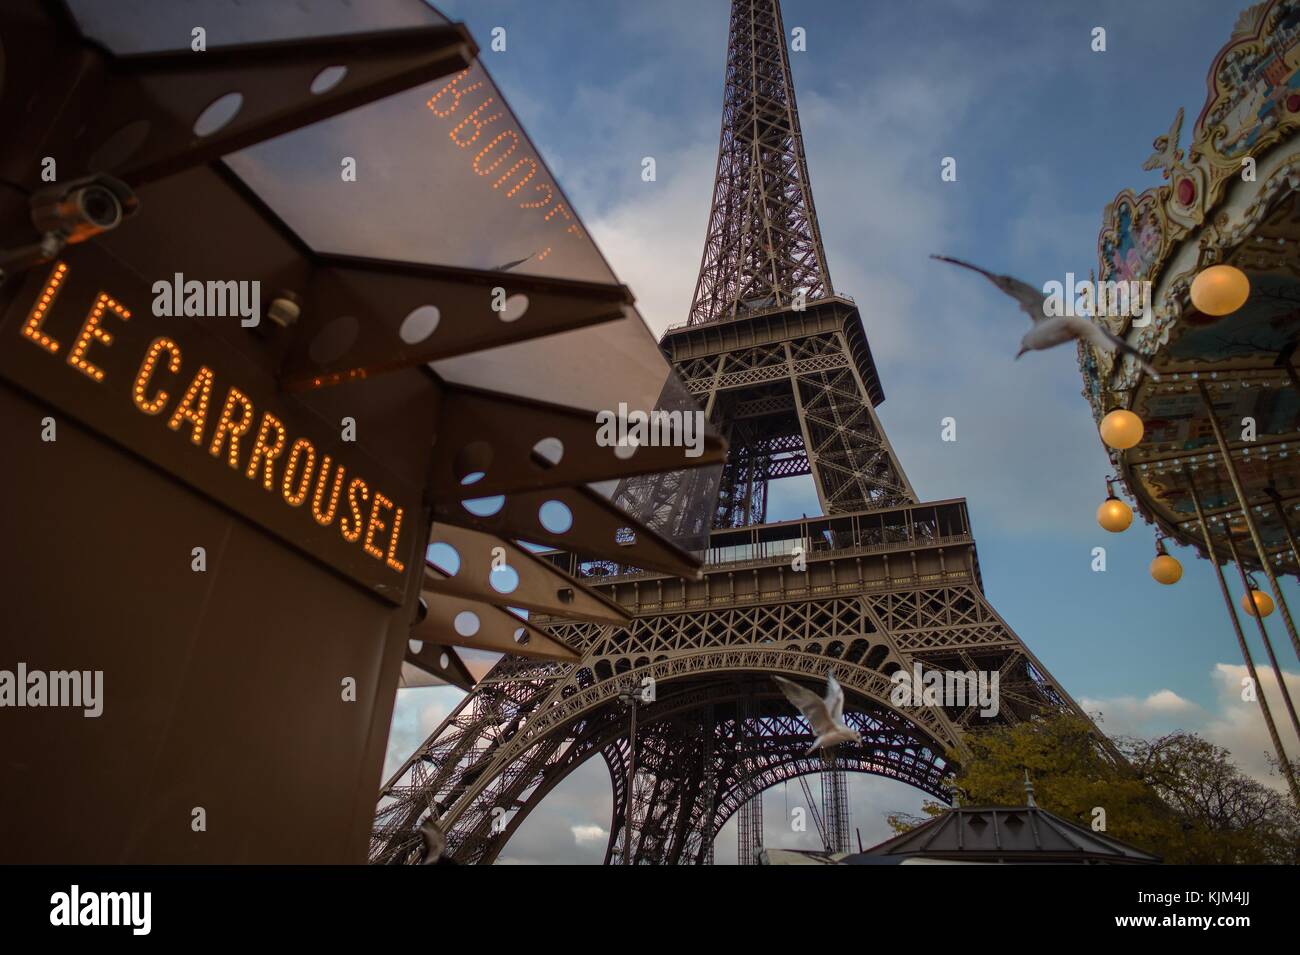 Eiffel Tower -  22/11/2012  -  France / Ile-de-France (region) / Paris  -  Eiffel Tower -  The iron lady of Paris, the Eiffel Tower   -  Sylvain Leser / Le Pictorium Stock Photo